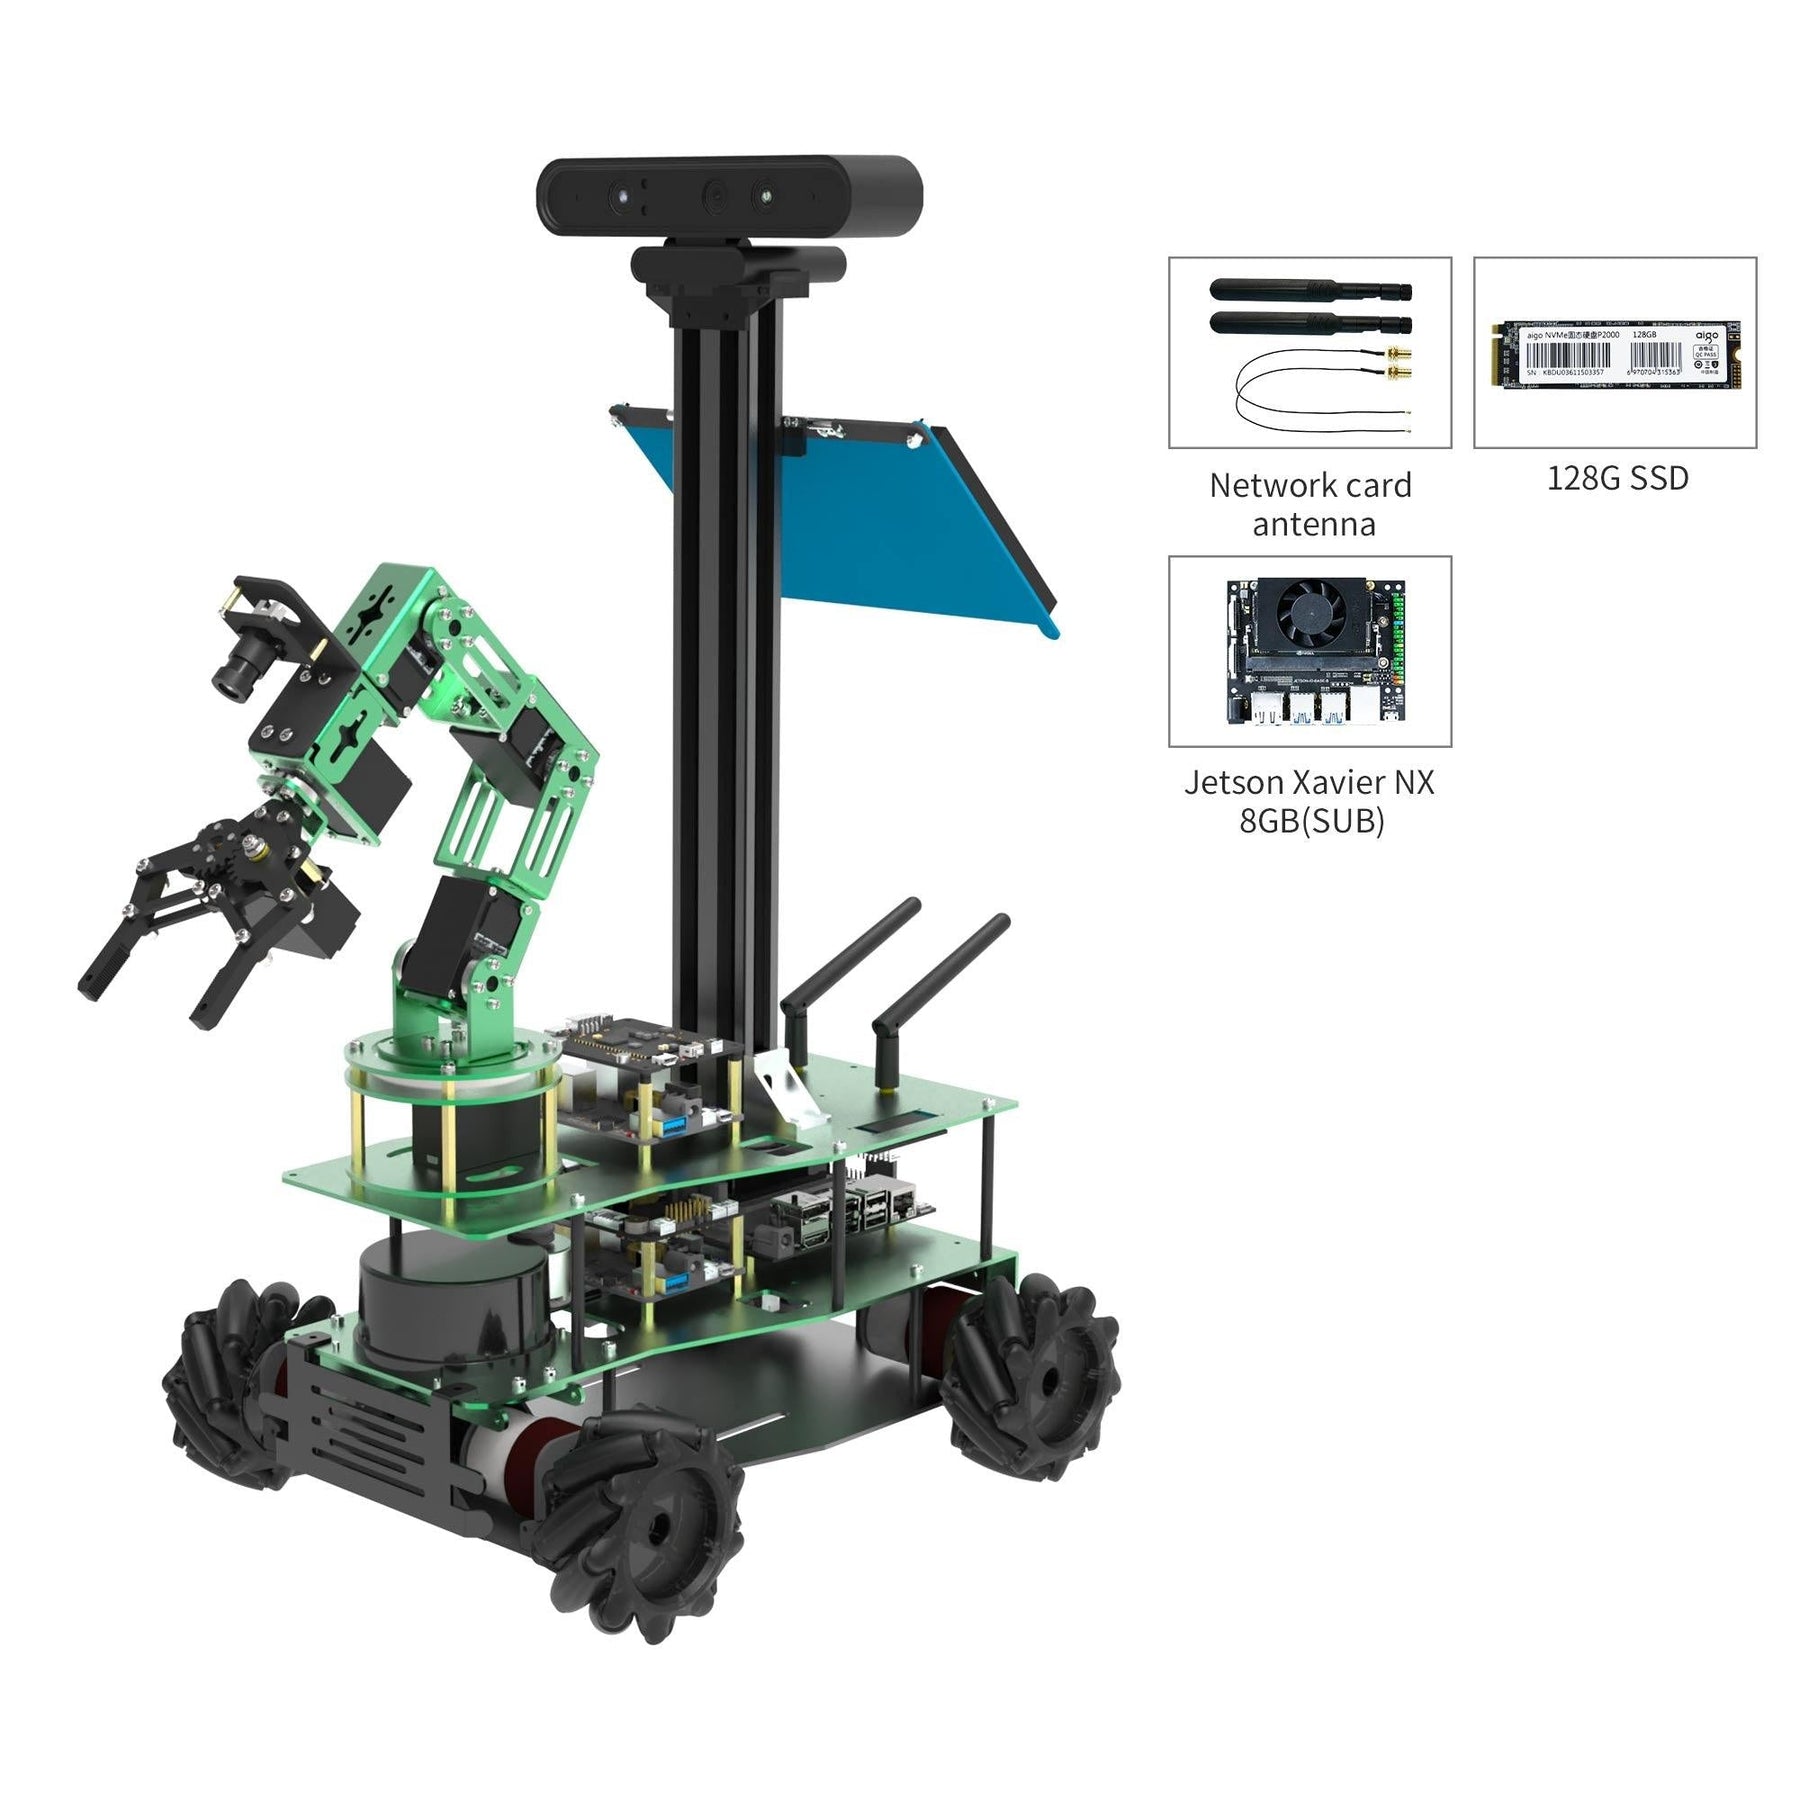 ROSMASTER X3 PLUS ROS STEM Education Python Programming Robot for Jetson NANO 4GB/Xavier NX/TX2 NX/RaspberryPi 4B